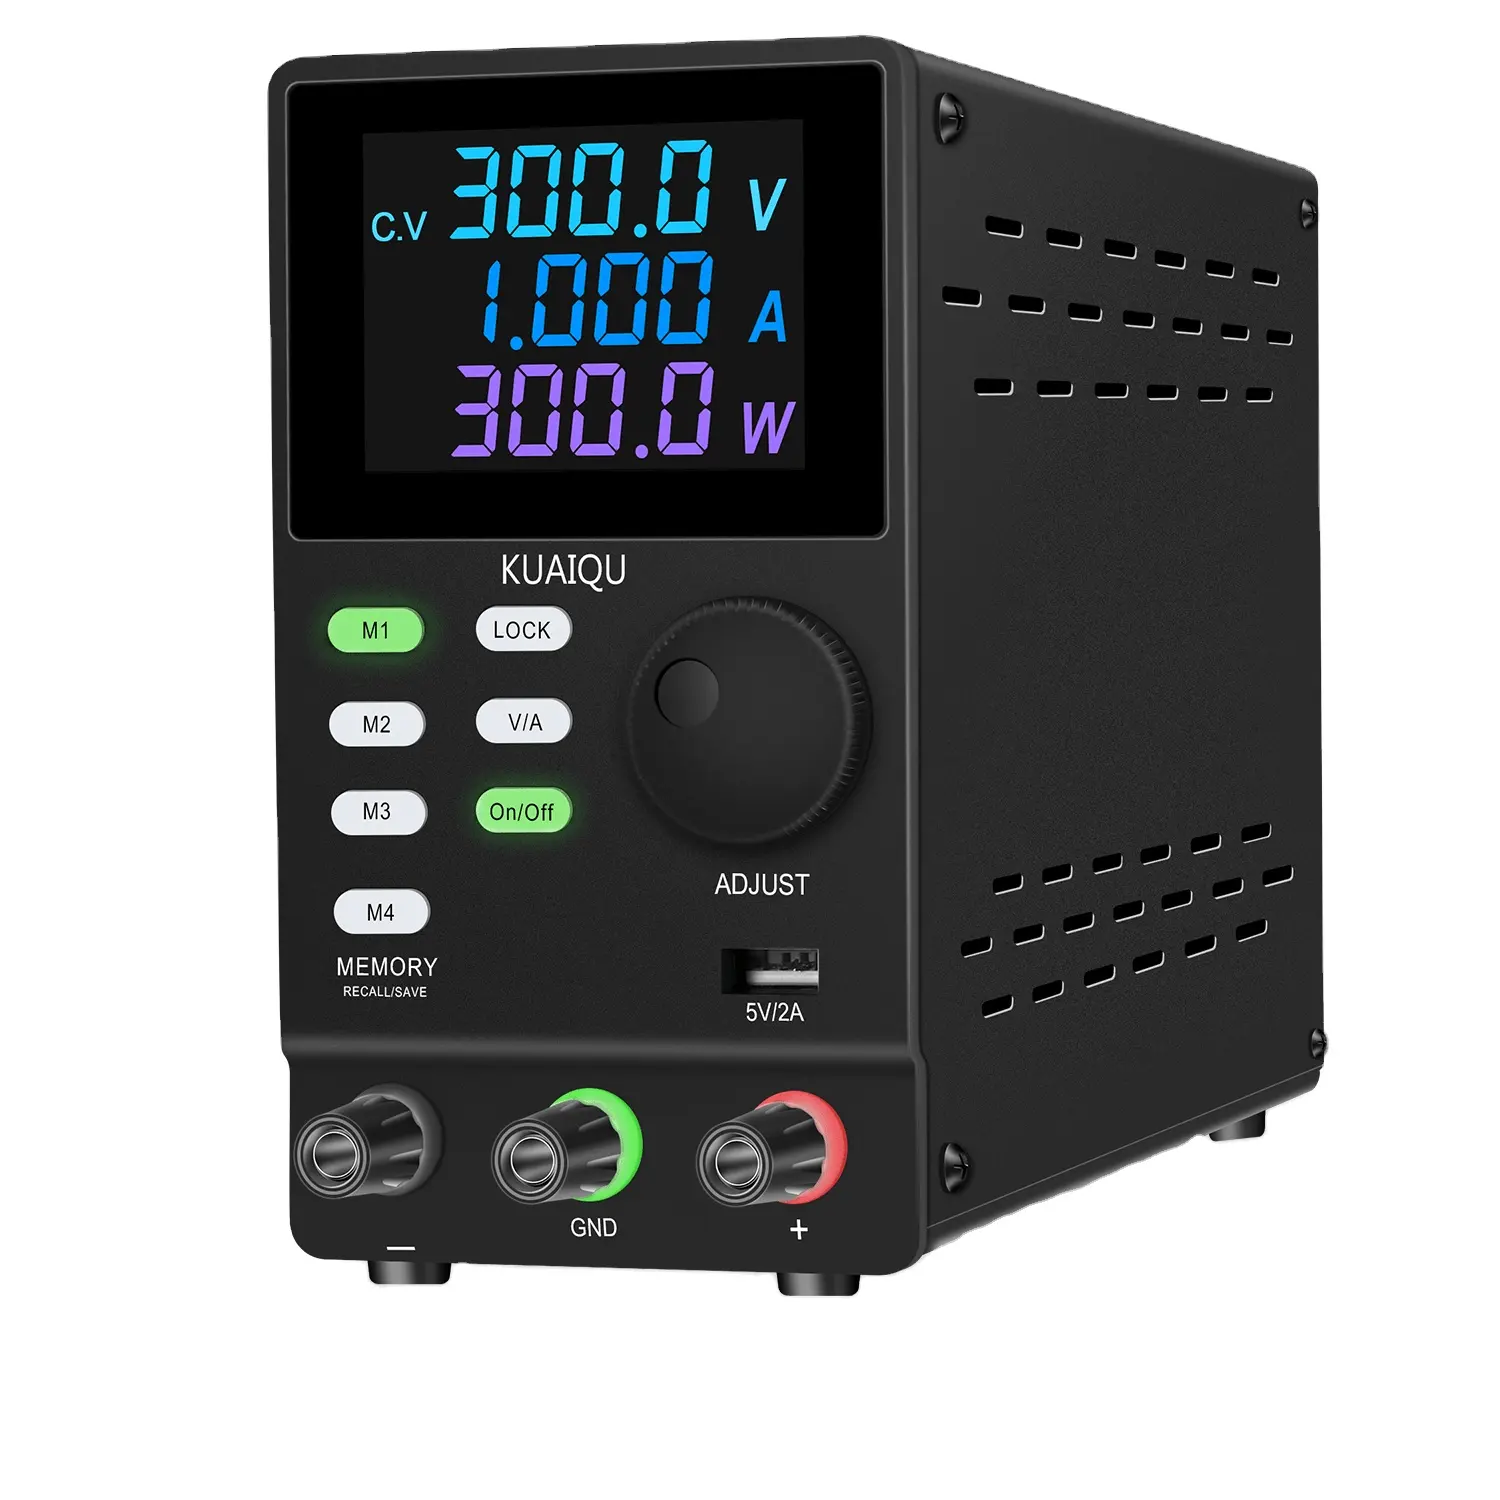 KUAIQU SPPS3001D 300V 1A Laboratory DC Power Supply 4 Digit Display Adjustable Voltage Regulator Stabilizer RS232 Port